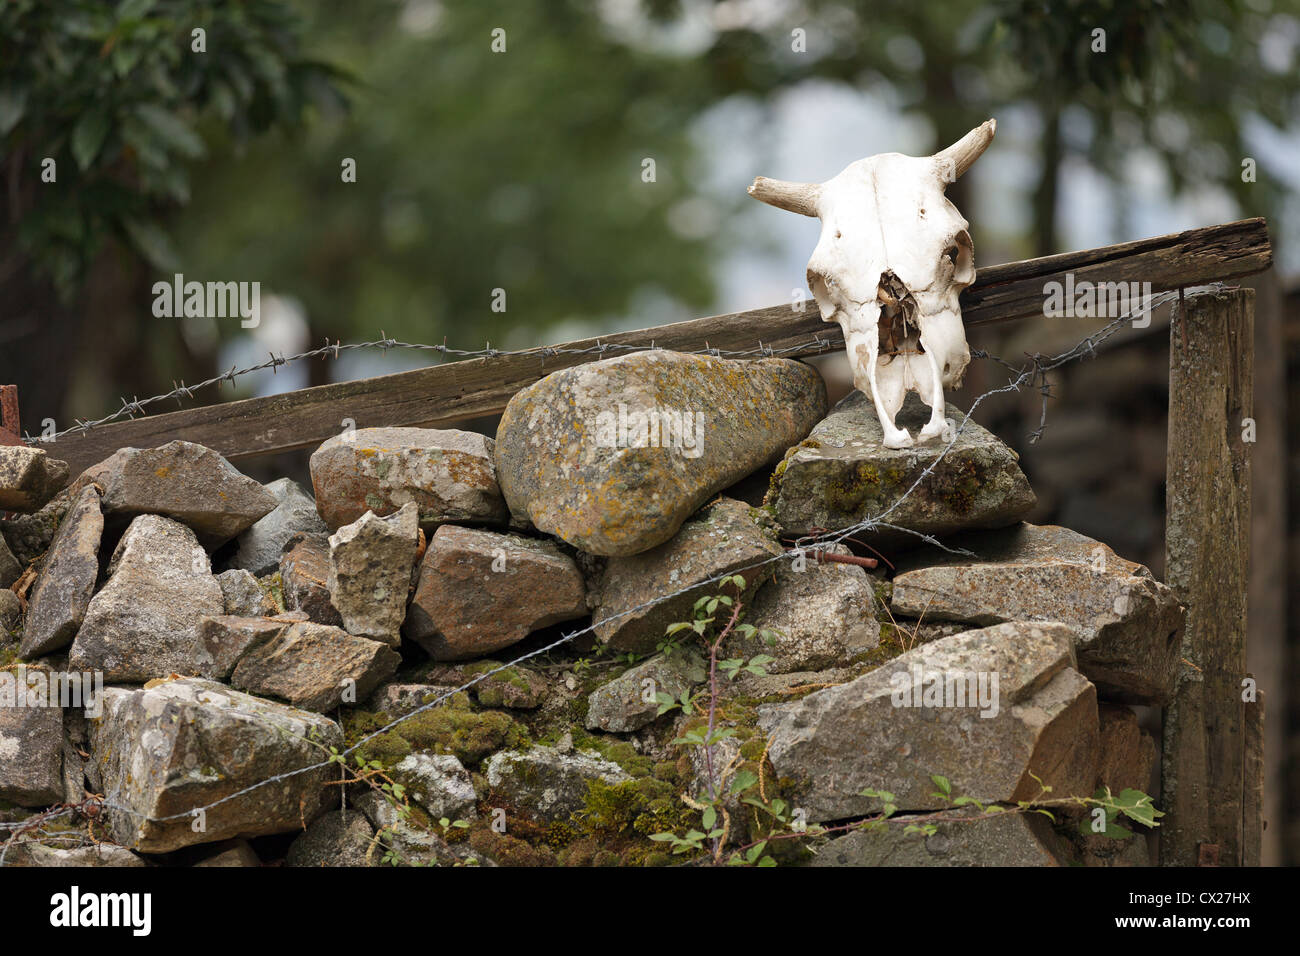 Sculptures en bois brut - Baie de Somme photo animaliere